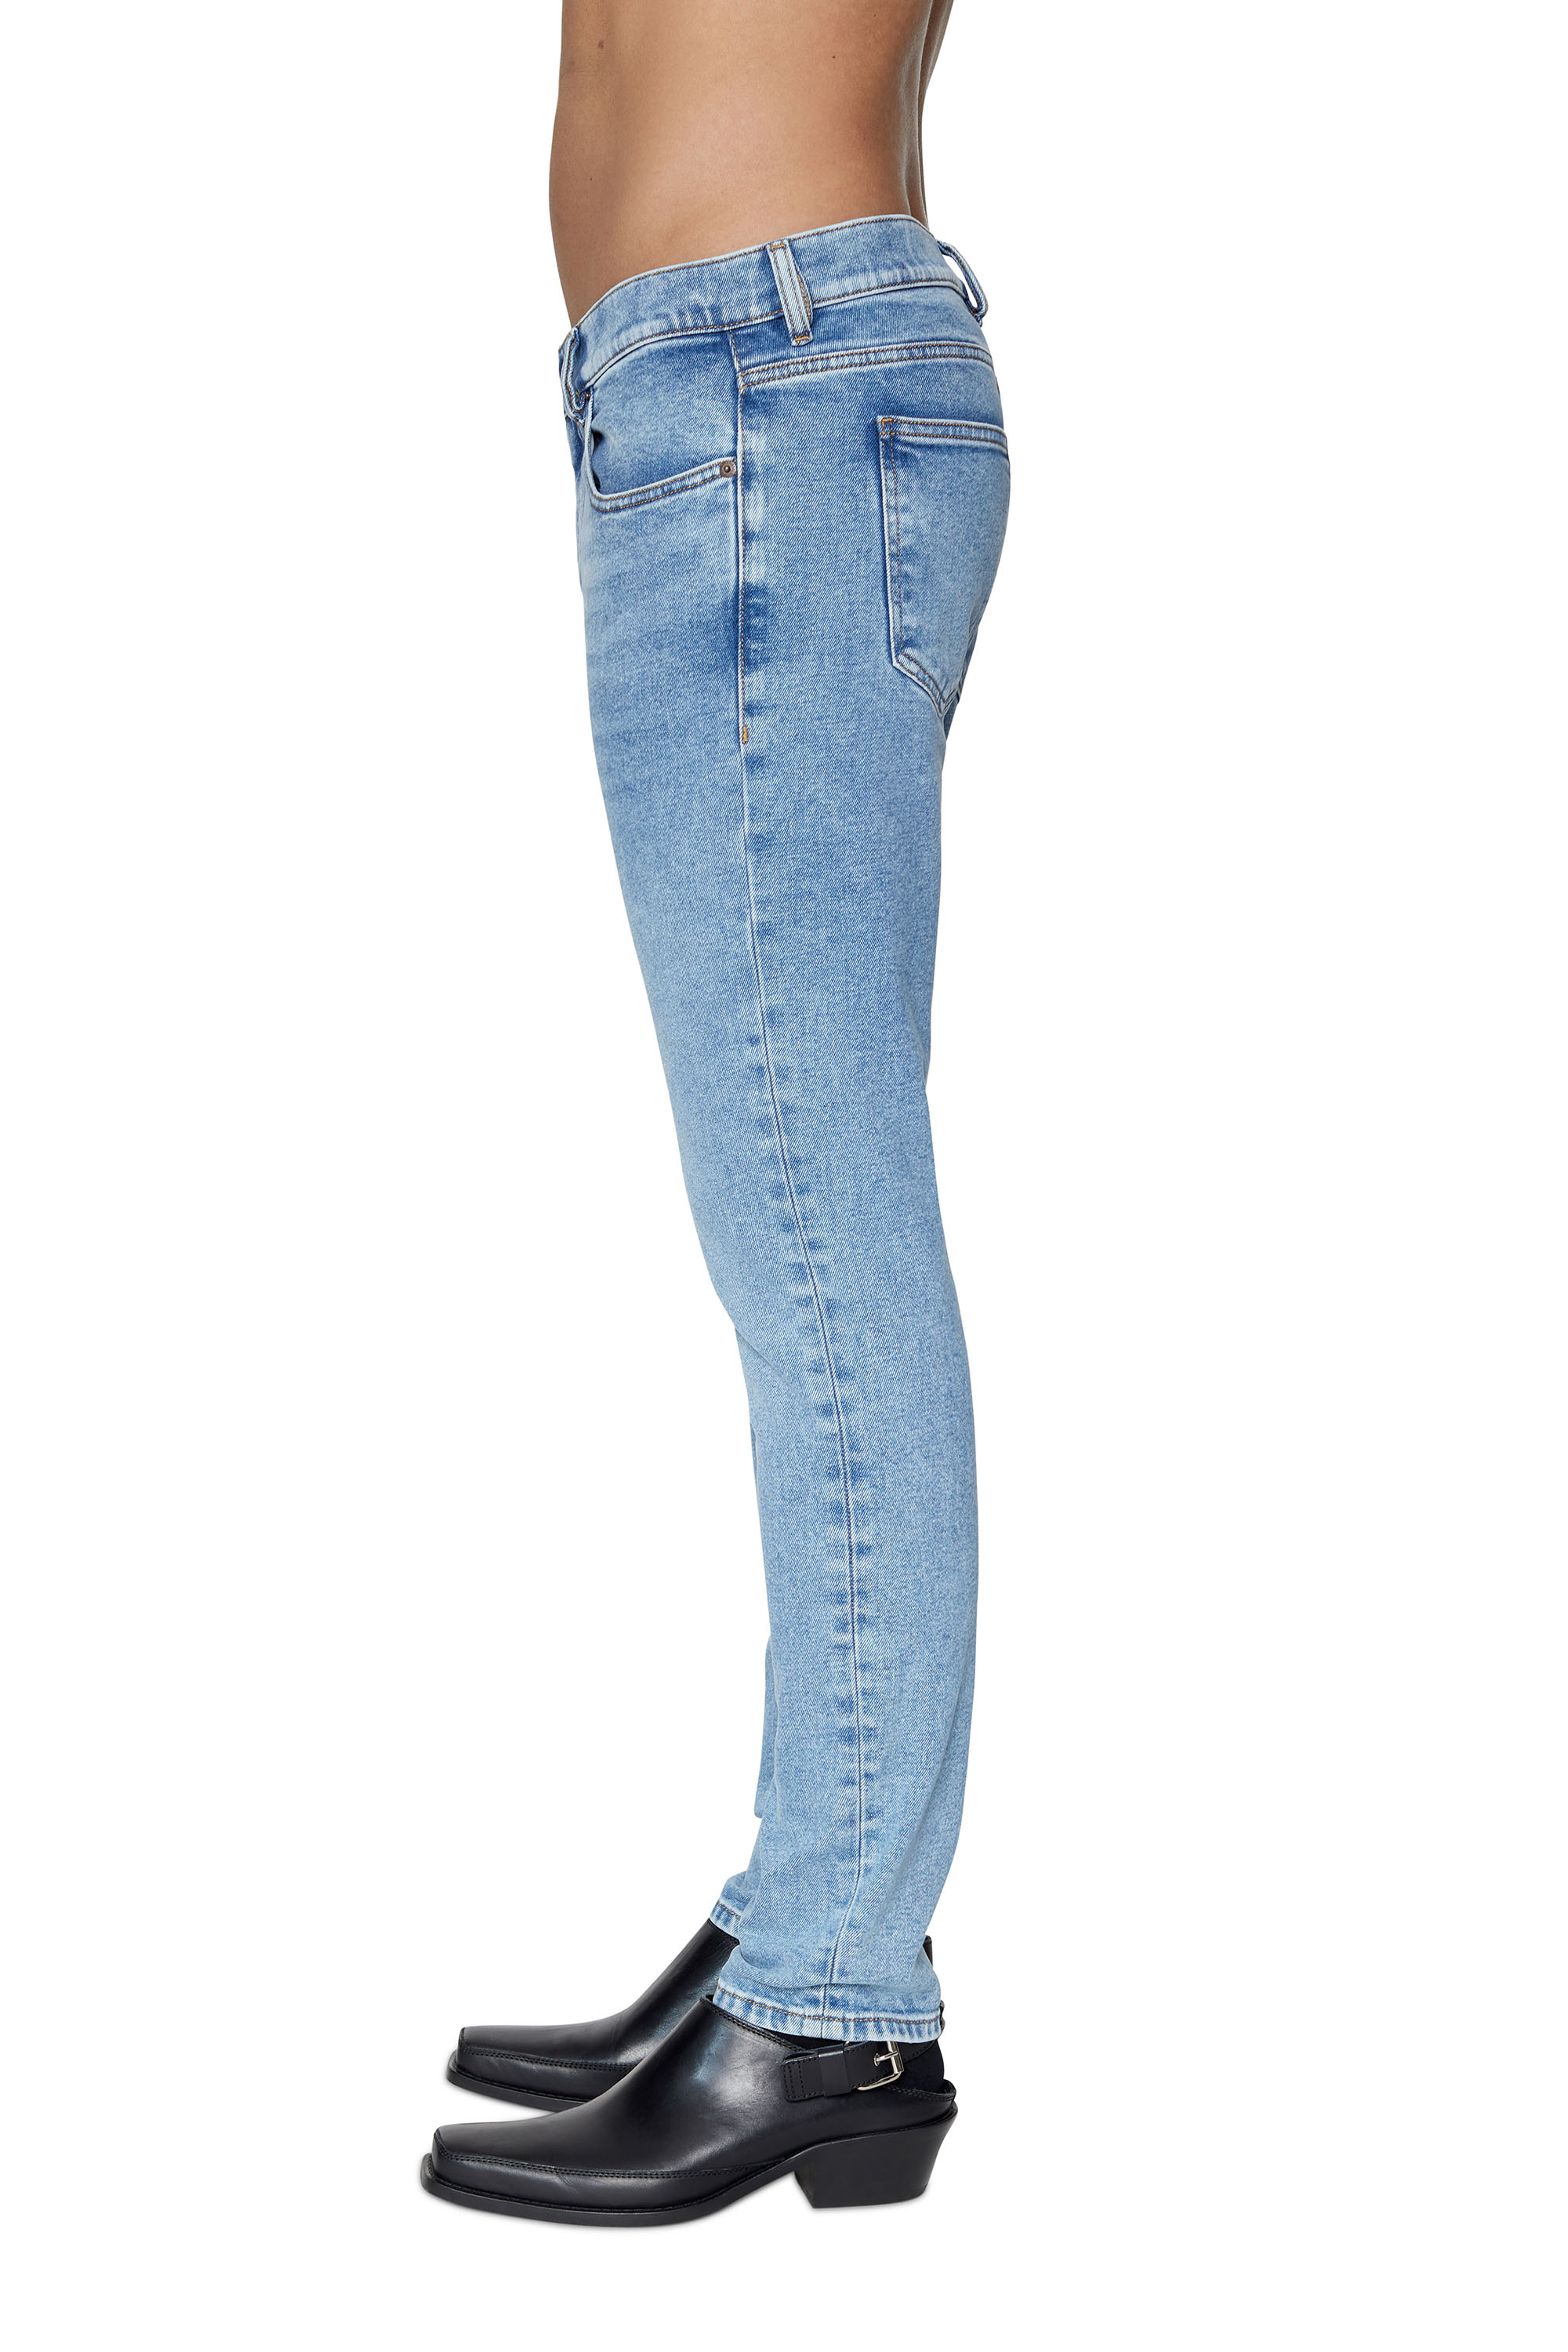 Diesel - Slim Jeans 2019 D-Strukt 09B92, Light Blue - Image 6